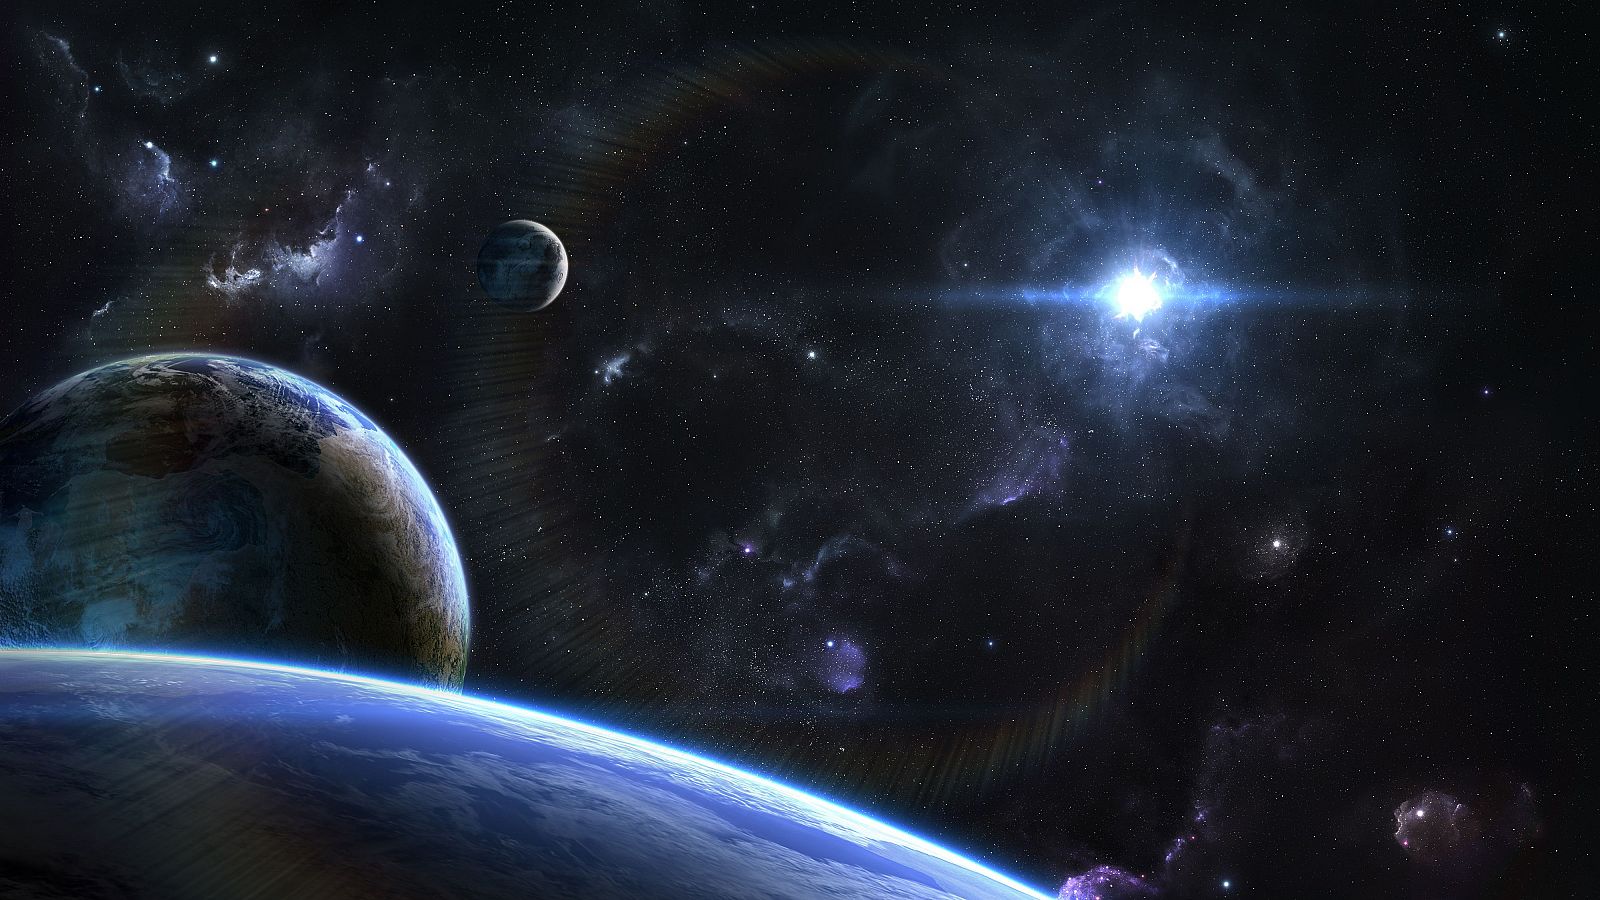 Vista orbital del espacio exterior sobre planetas y lunas alienígenas